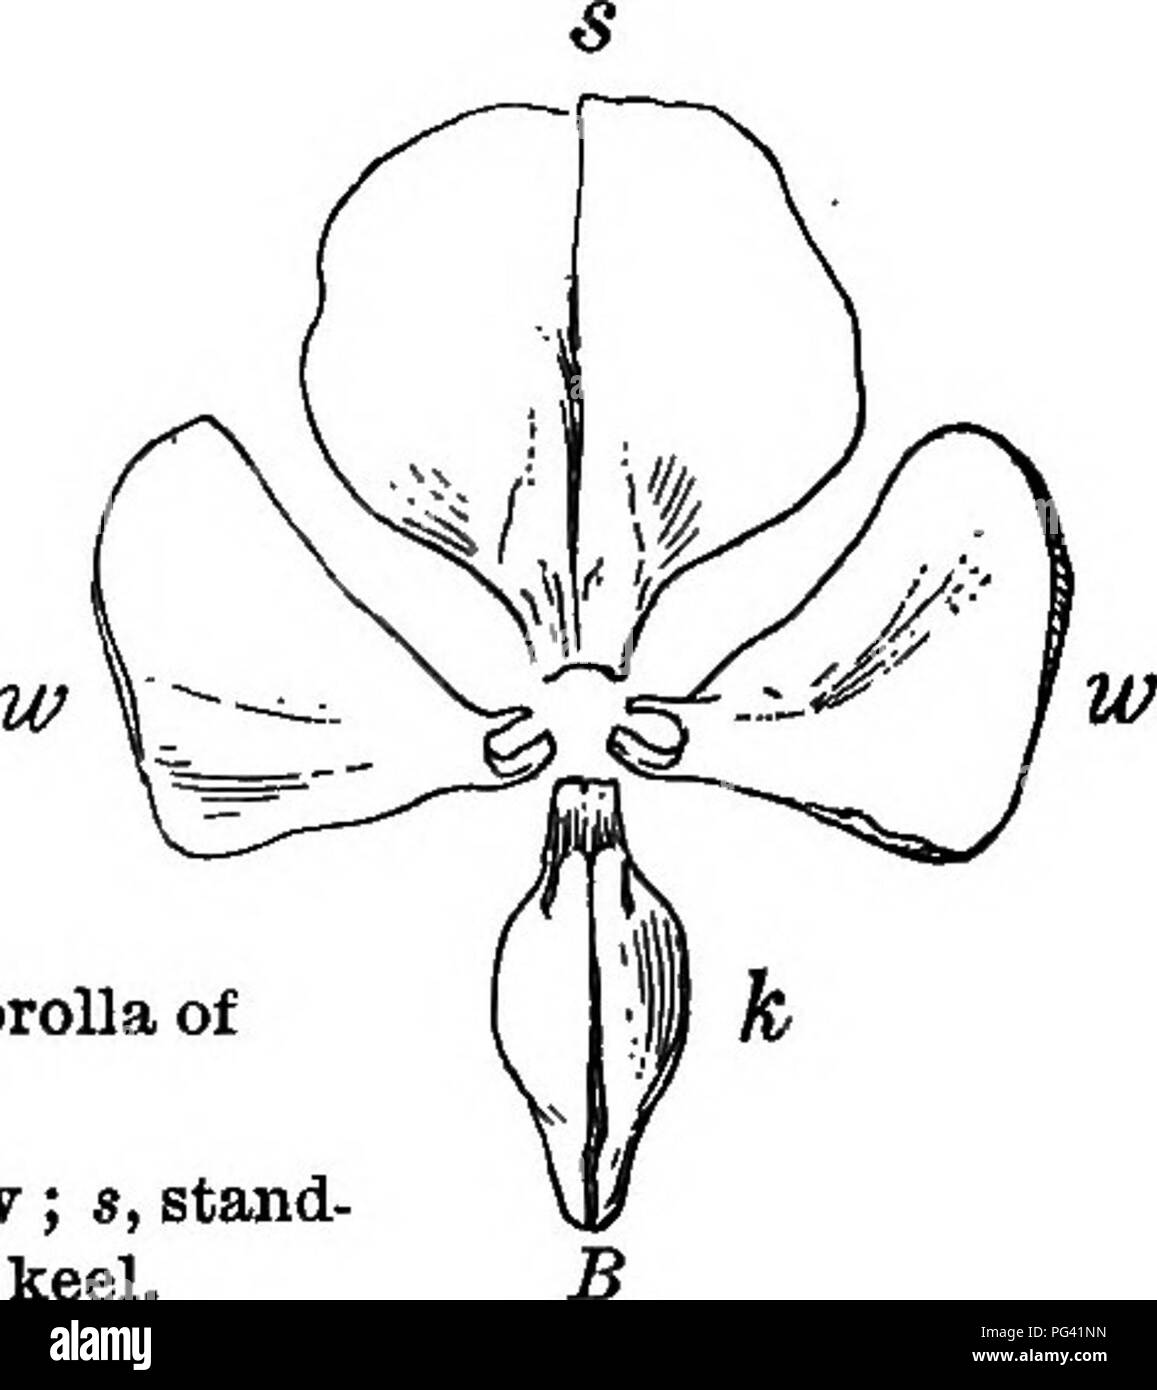 . Fondements de la botanique. La botanique, la botanique. Fig. 141.-corolle irrégulière, de pois sucré. Une vue latérale, vue de face, B ; ; s, stand, ard ; w w, les ailes ; h, Iseel.. le lotus et le magnolia le réceptacle est de grande taille, en particulier après les pétales sont tombés et les semences ont mûri. Le réceptacle de la rose (Fig. 142) est creuse et la pistUs découlent de sa surface intérieure. 211. Imparfait ou séparés des fleurs. - Les étamines et pistils peuvent être produits dans une autre fleurs, qui sont, bien entendu, imparfait. Ce terme n'implique pas que ces fleurs font leur travail tout à fait moins que d'autres, Banque D'Images